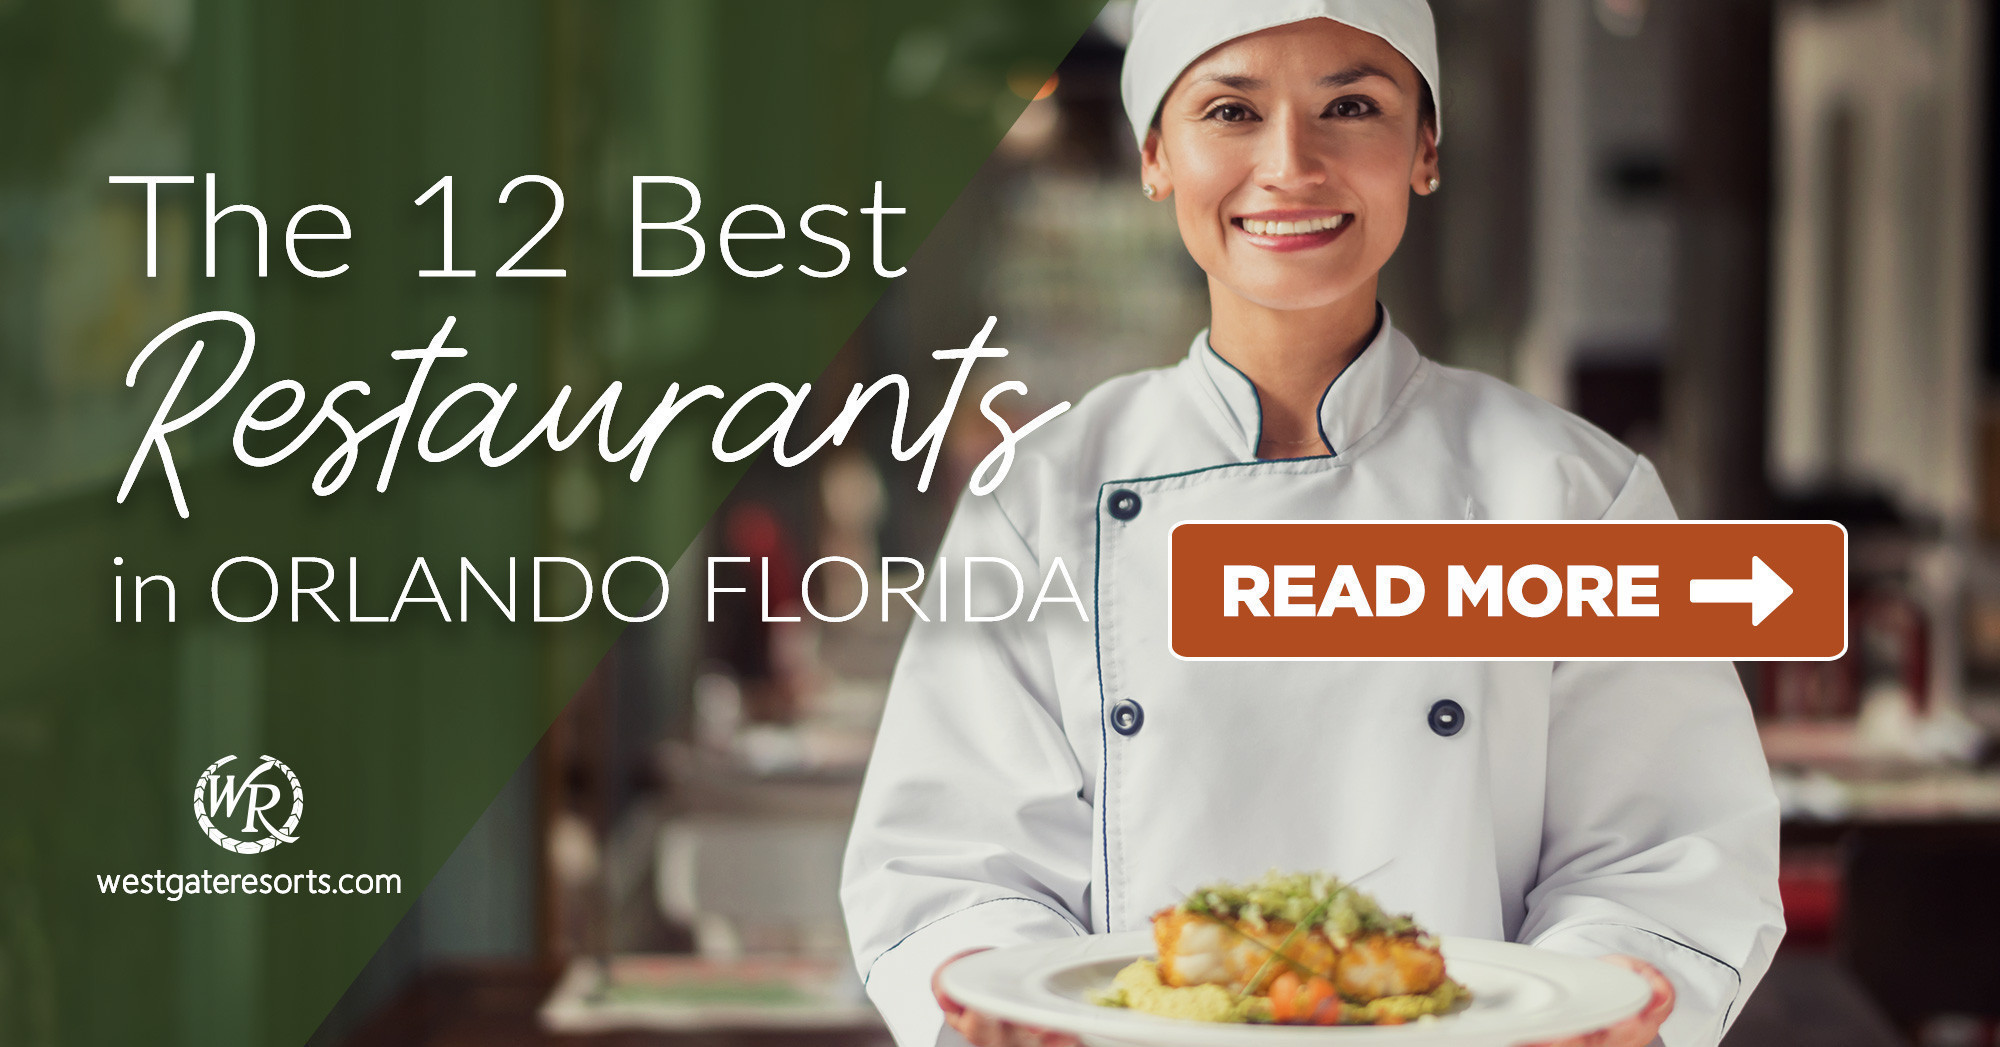 The 12 Best Restaurants in Orlando Florida